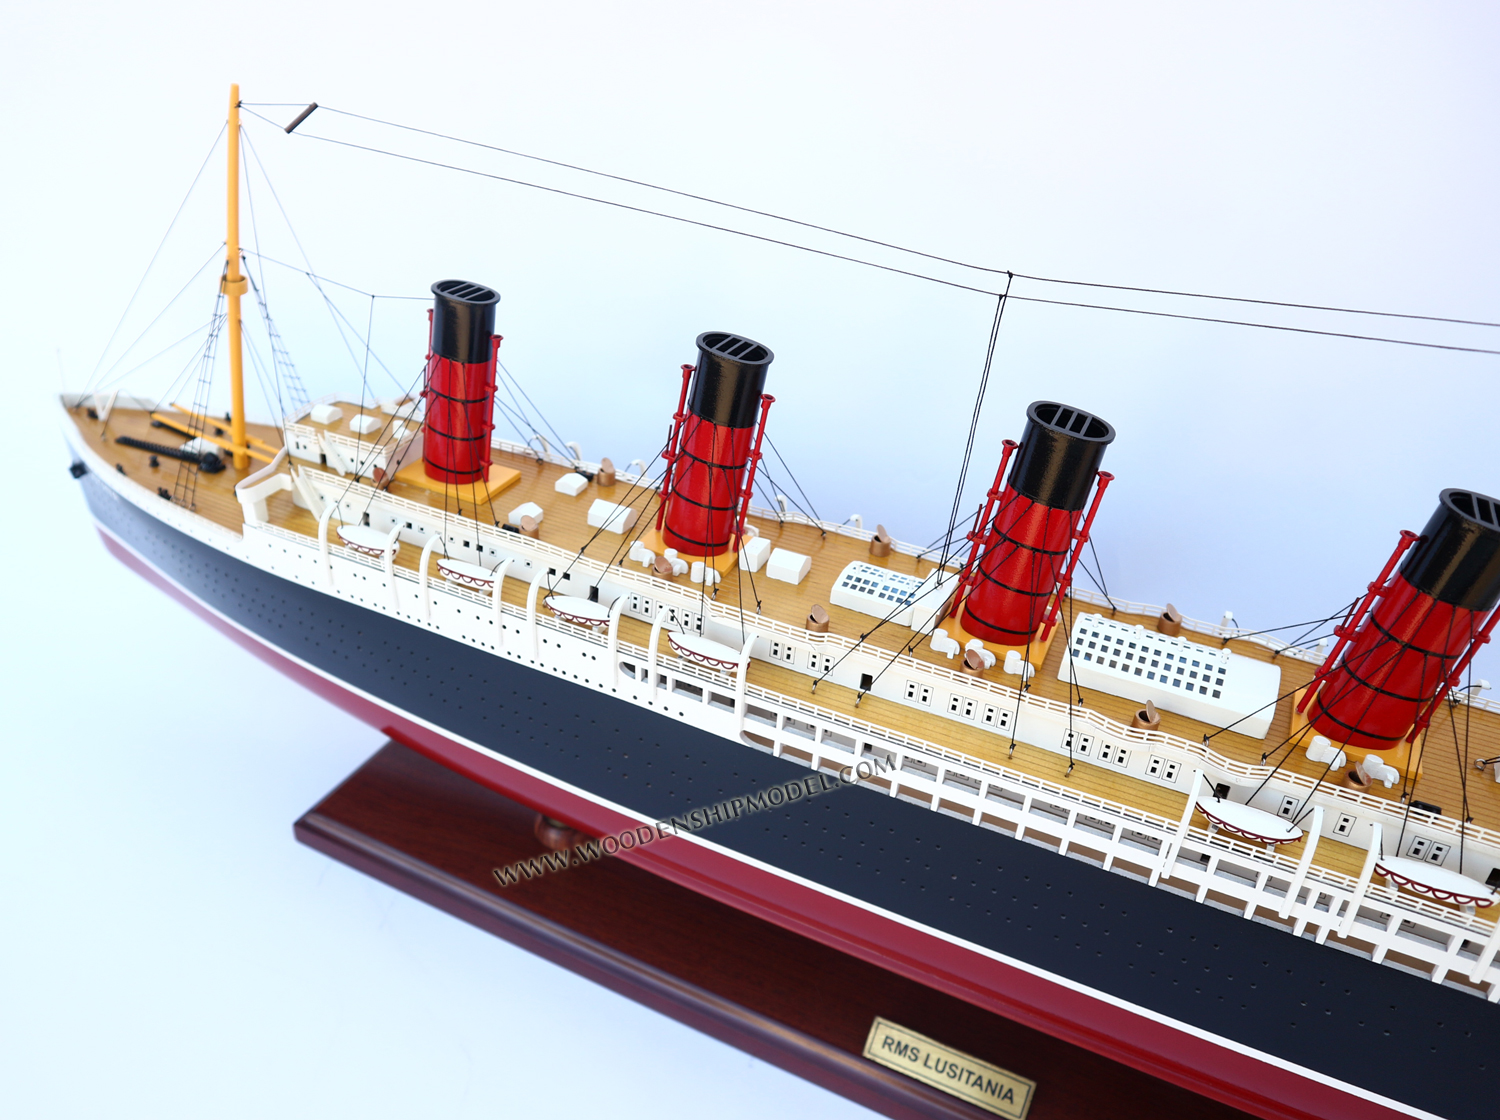 RMS Lusitania stern